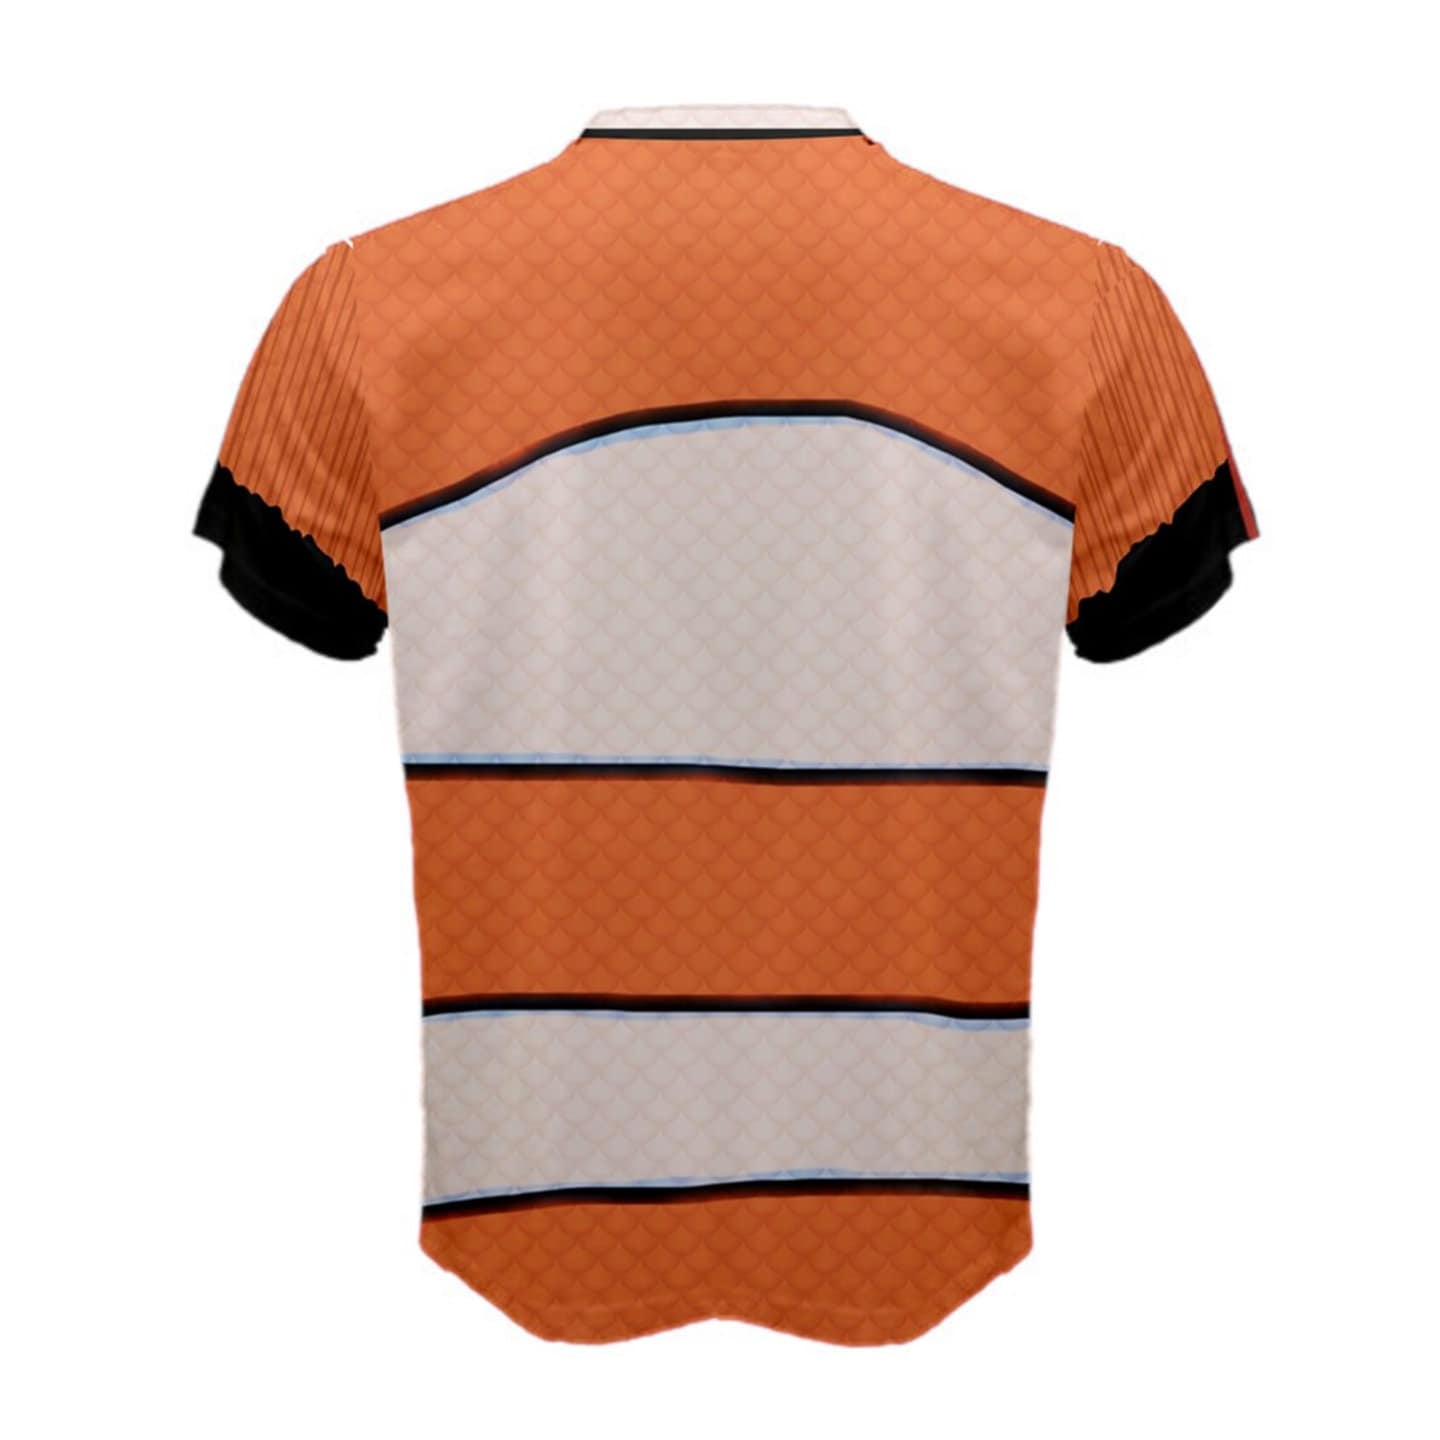 RUSH ORDER: Men's Finding Nemo Inspired ATHLETIC Shirt